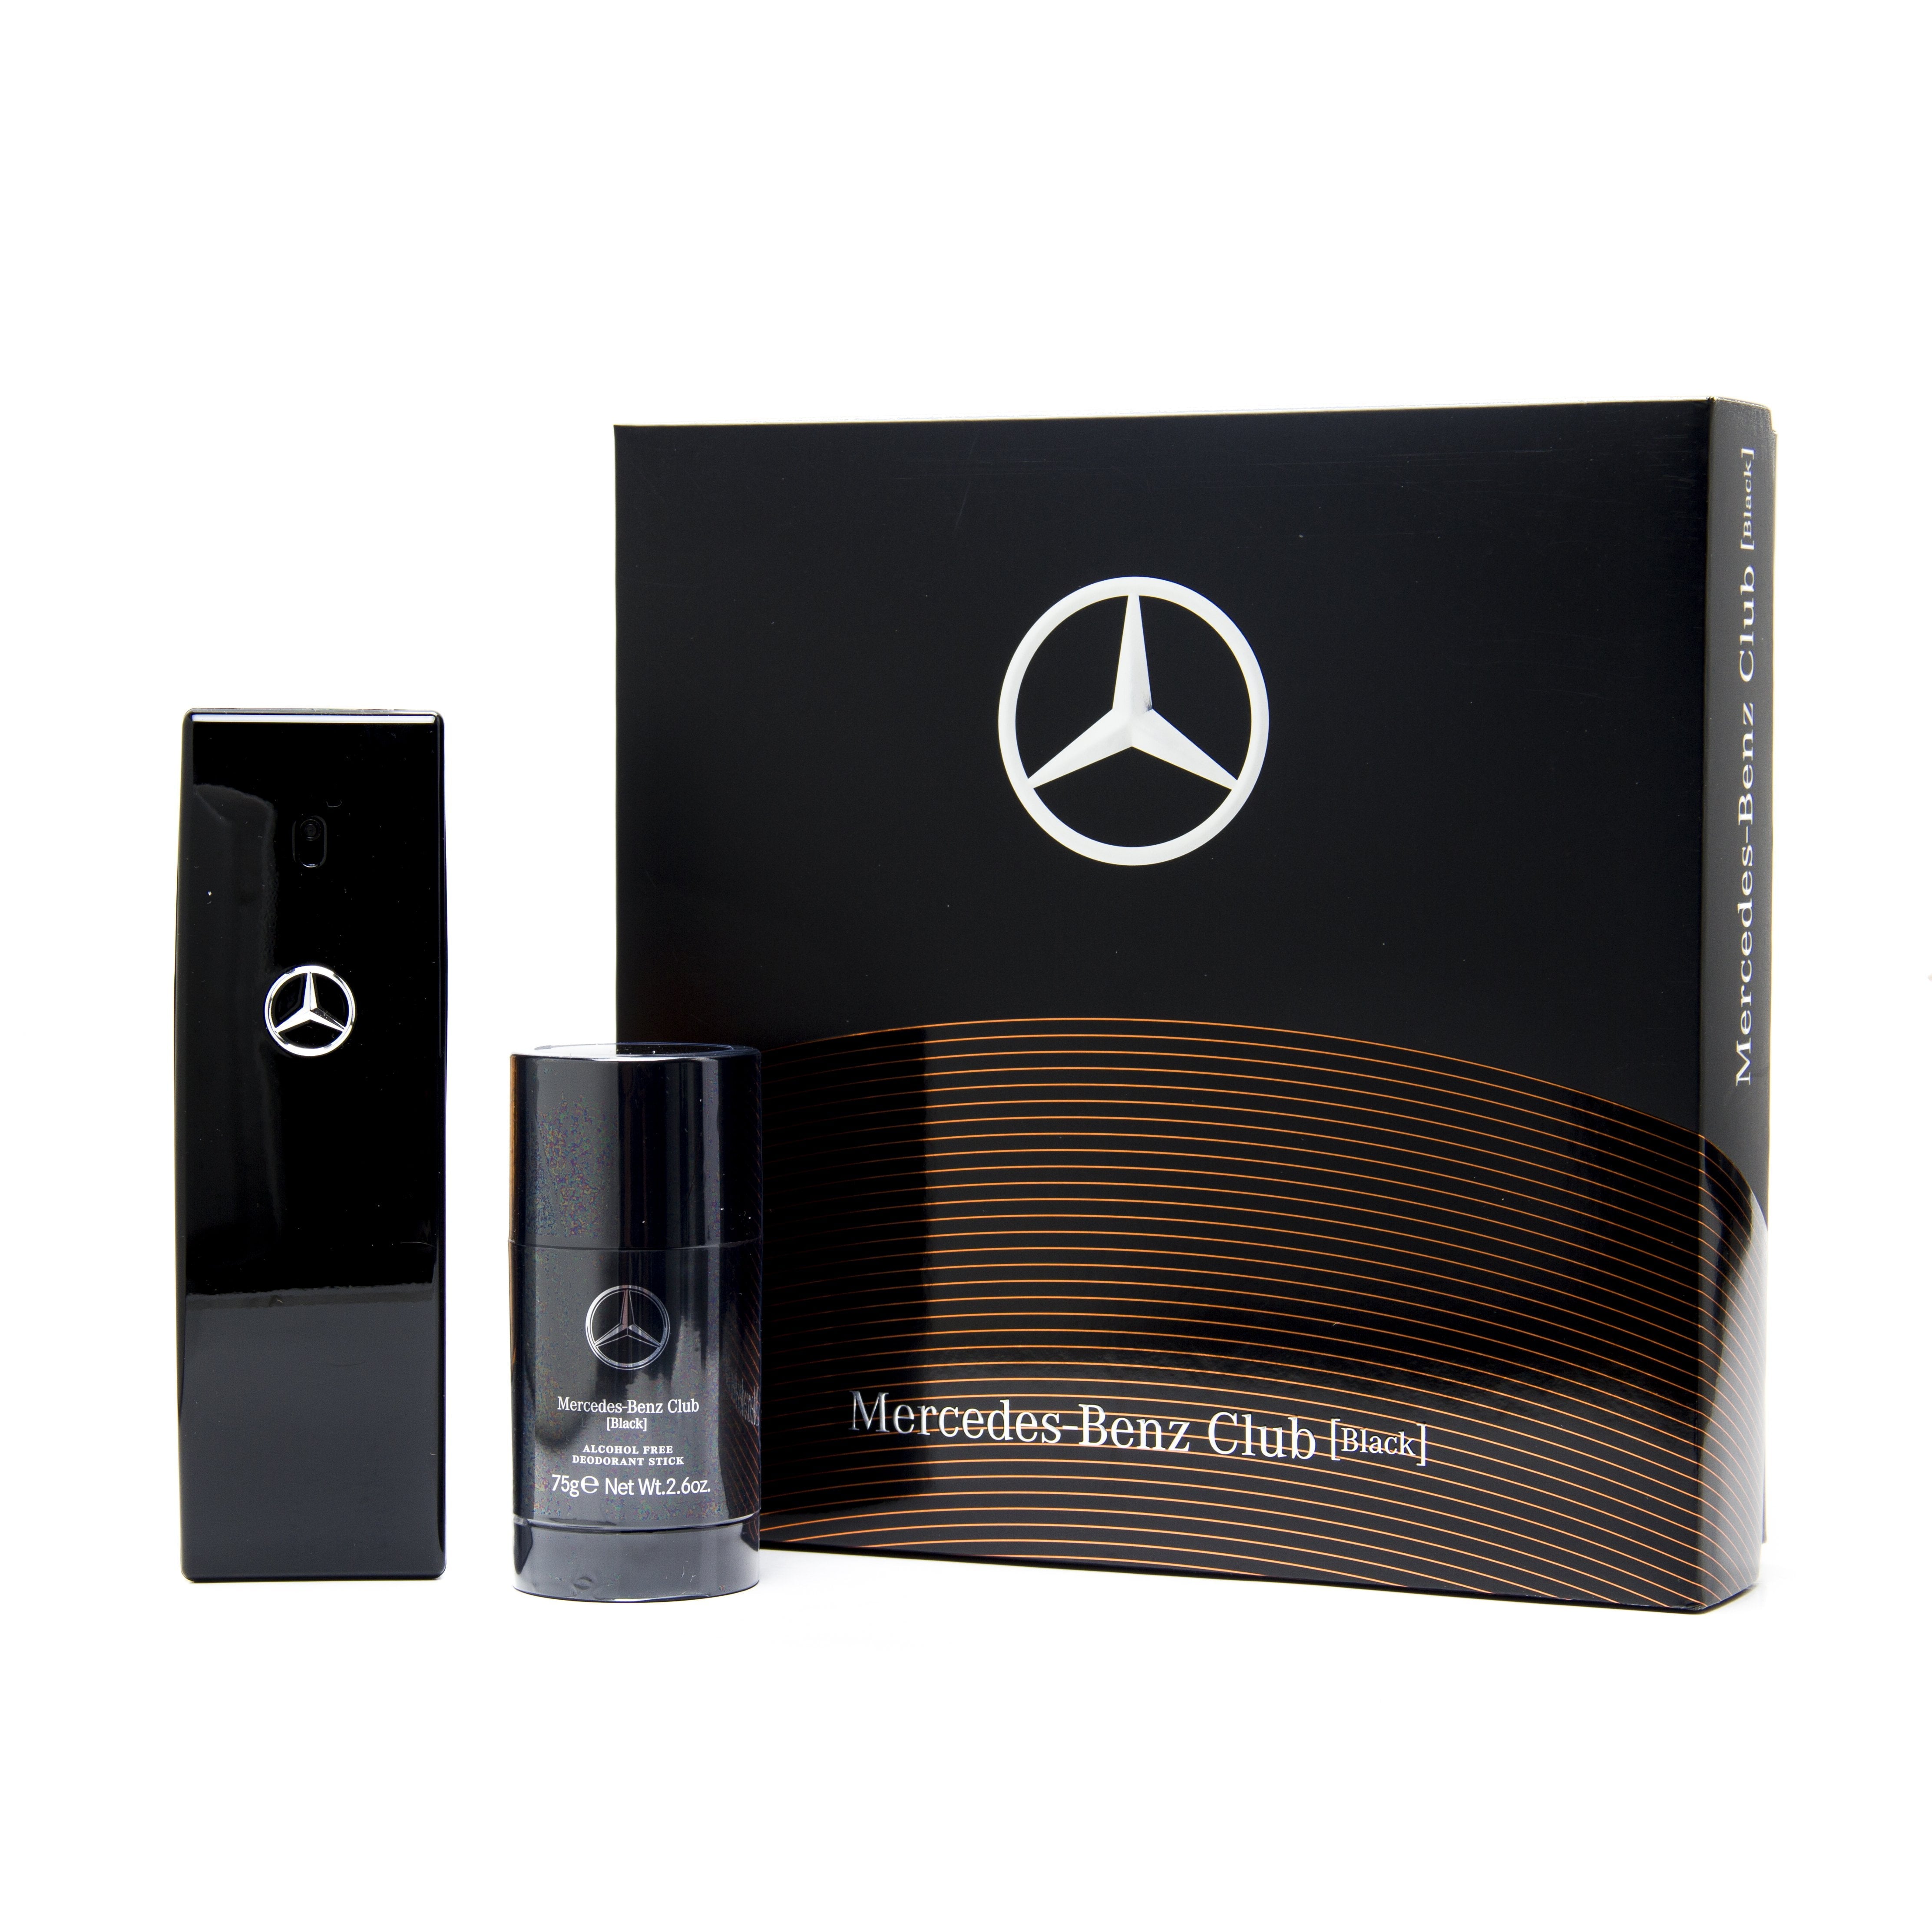 Mercedes-Benz Club Black.